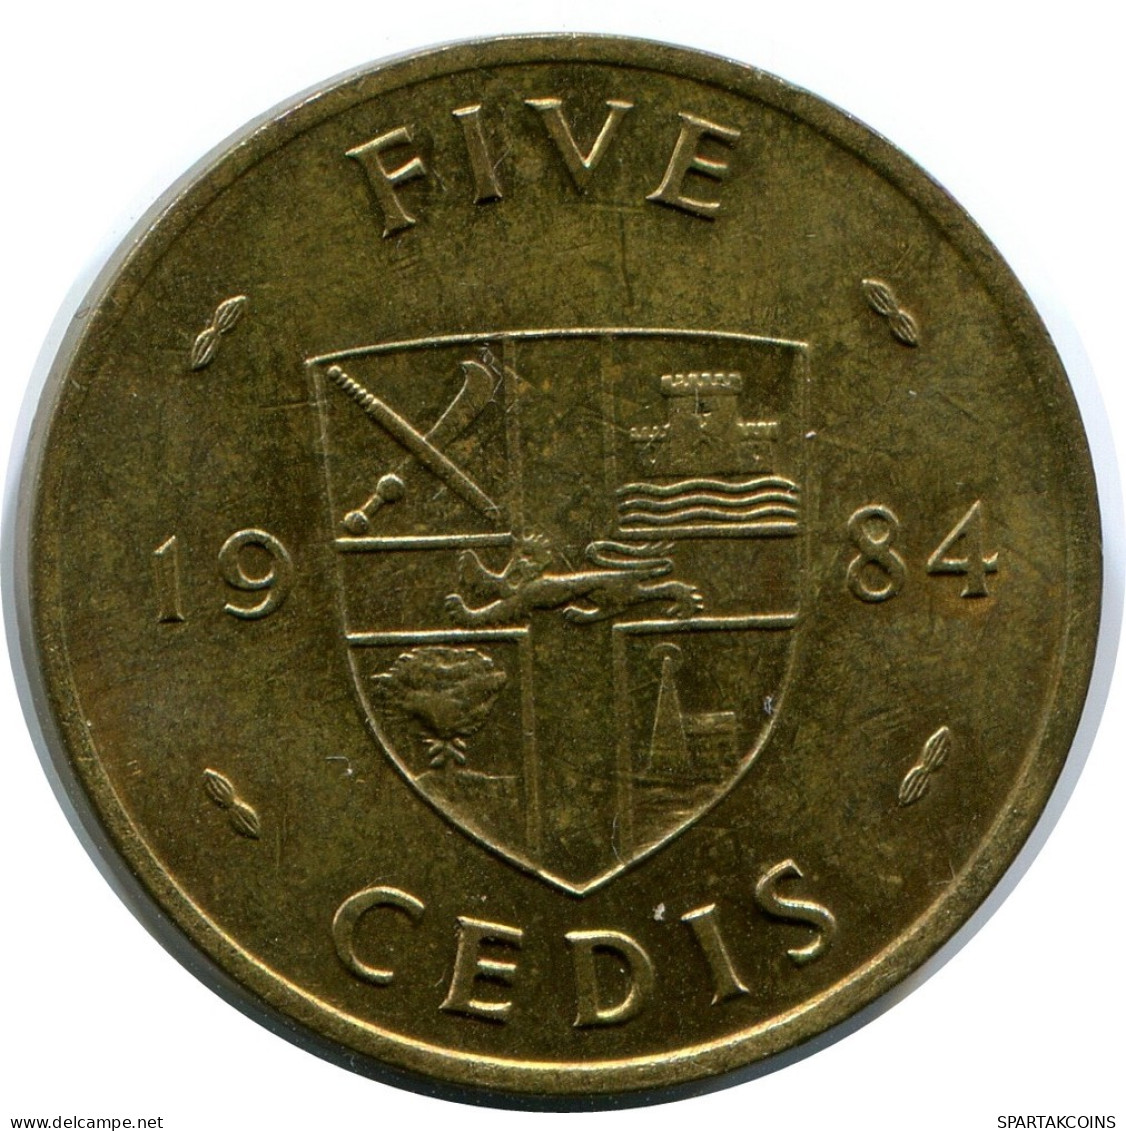 5 CEDIS 1984 GHANA Coin #AP884.U.A - Ghana